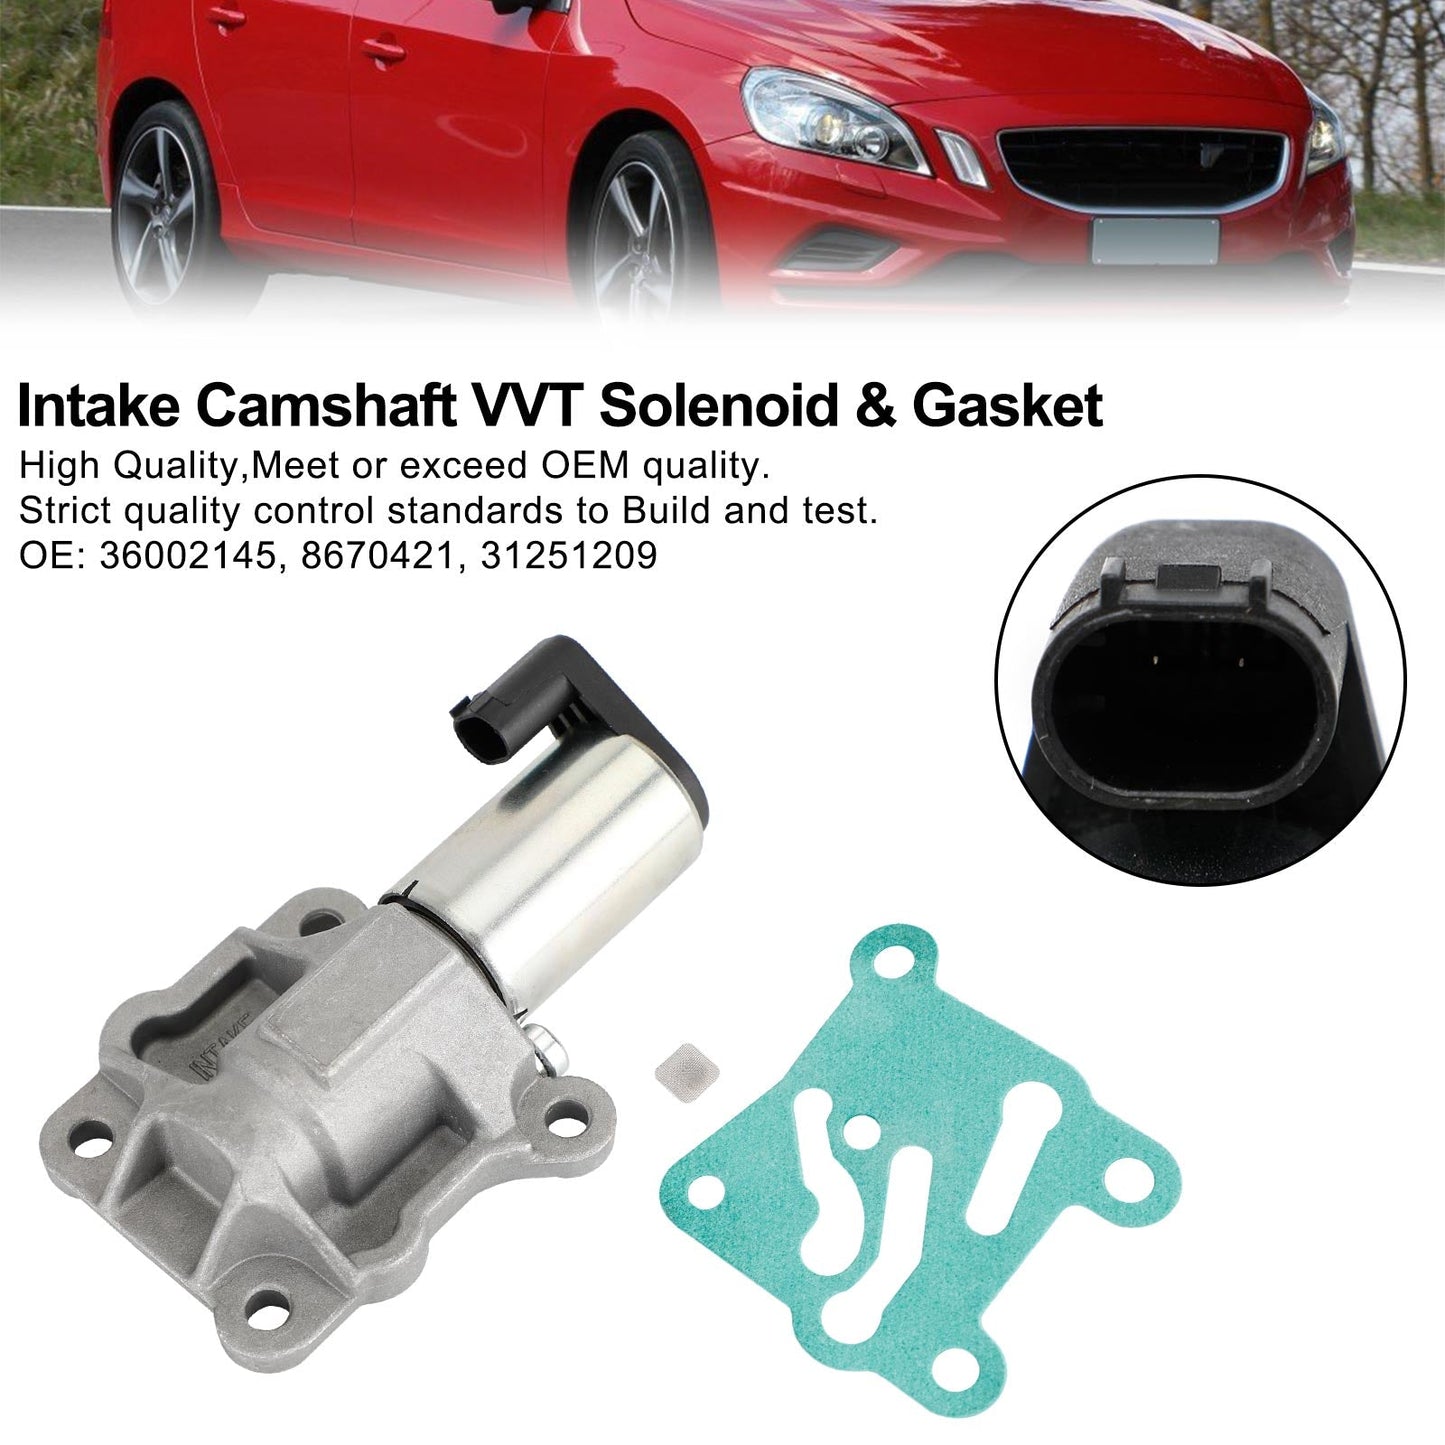 Intake Camshaft VVT Solenoid & Gasket 36002145 for Volvo C70 V70 XC70 S80